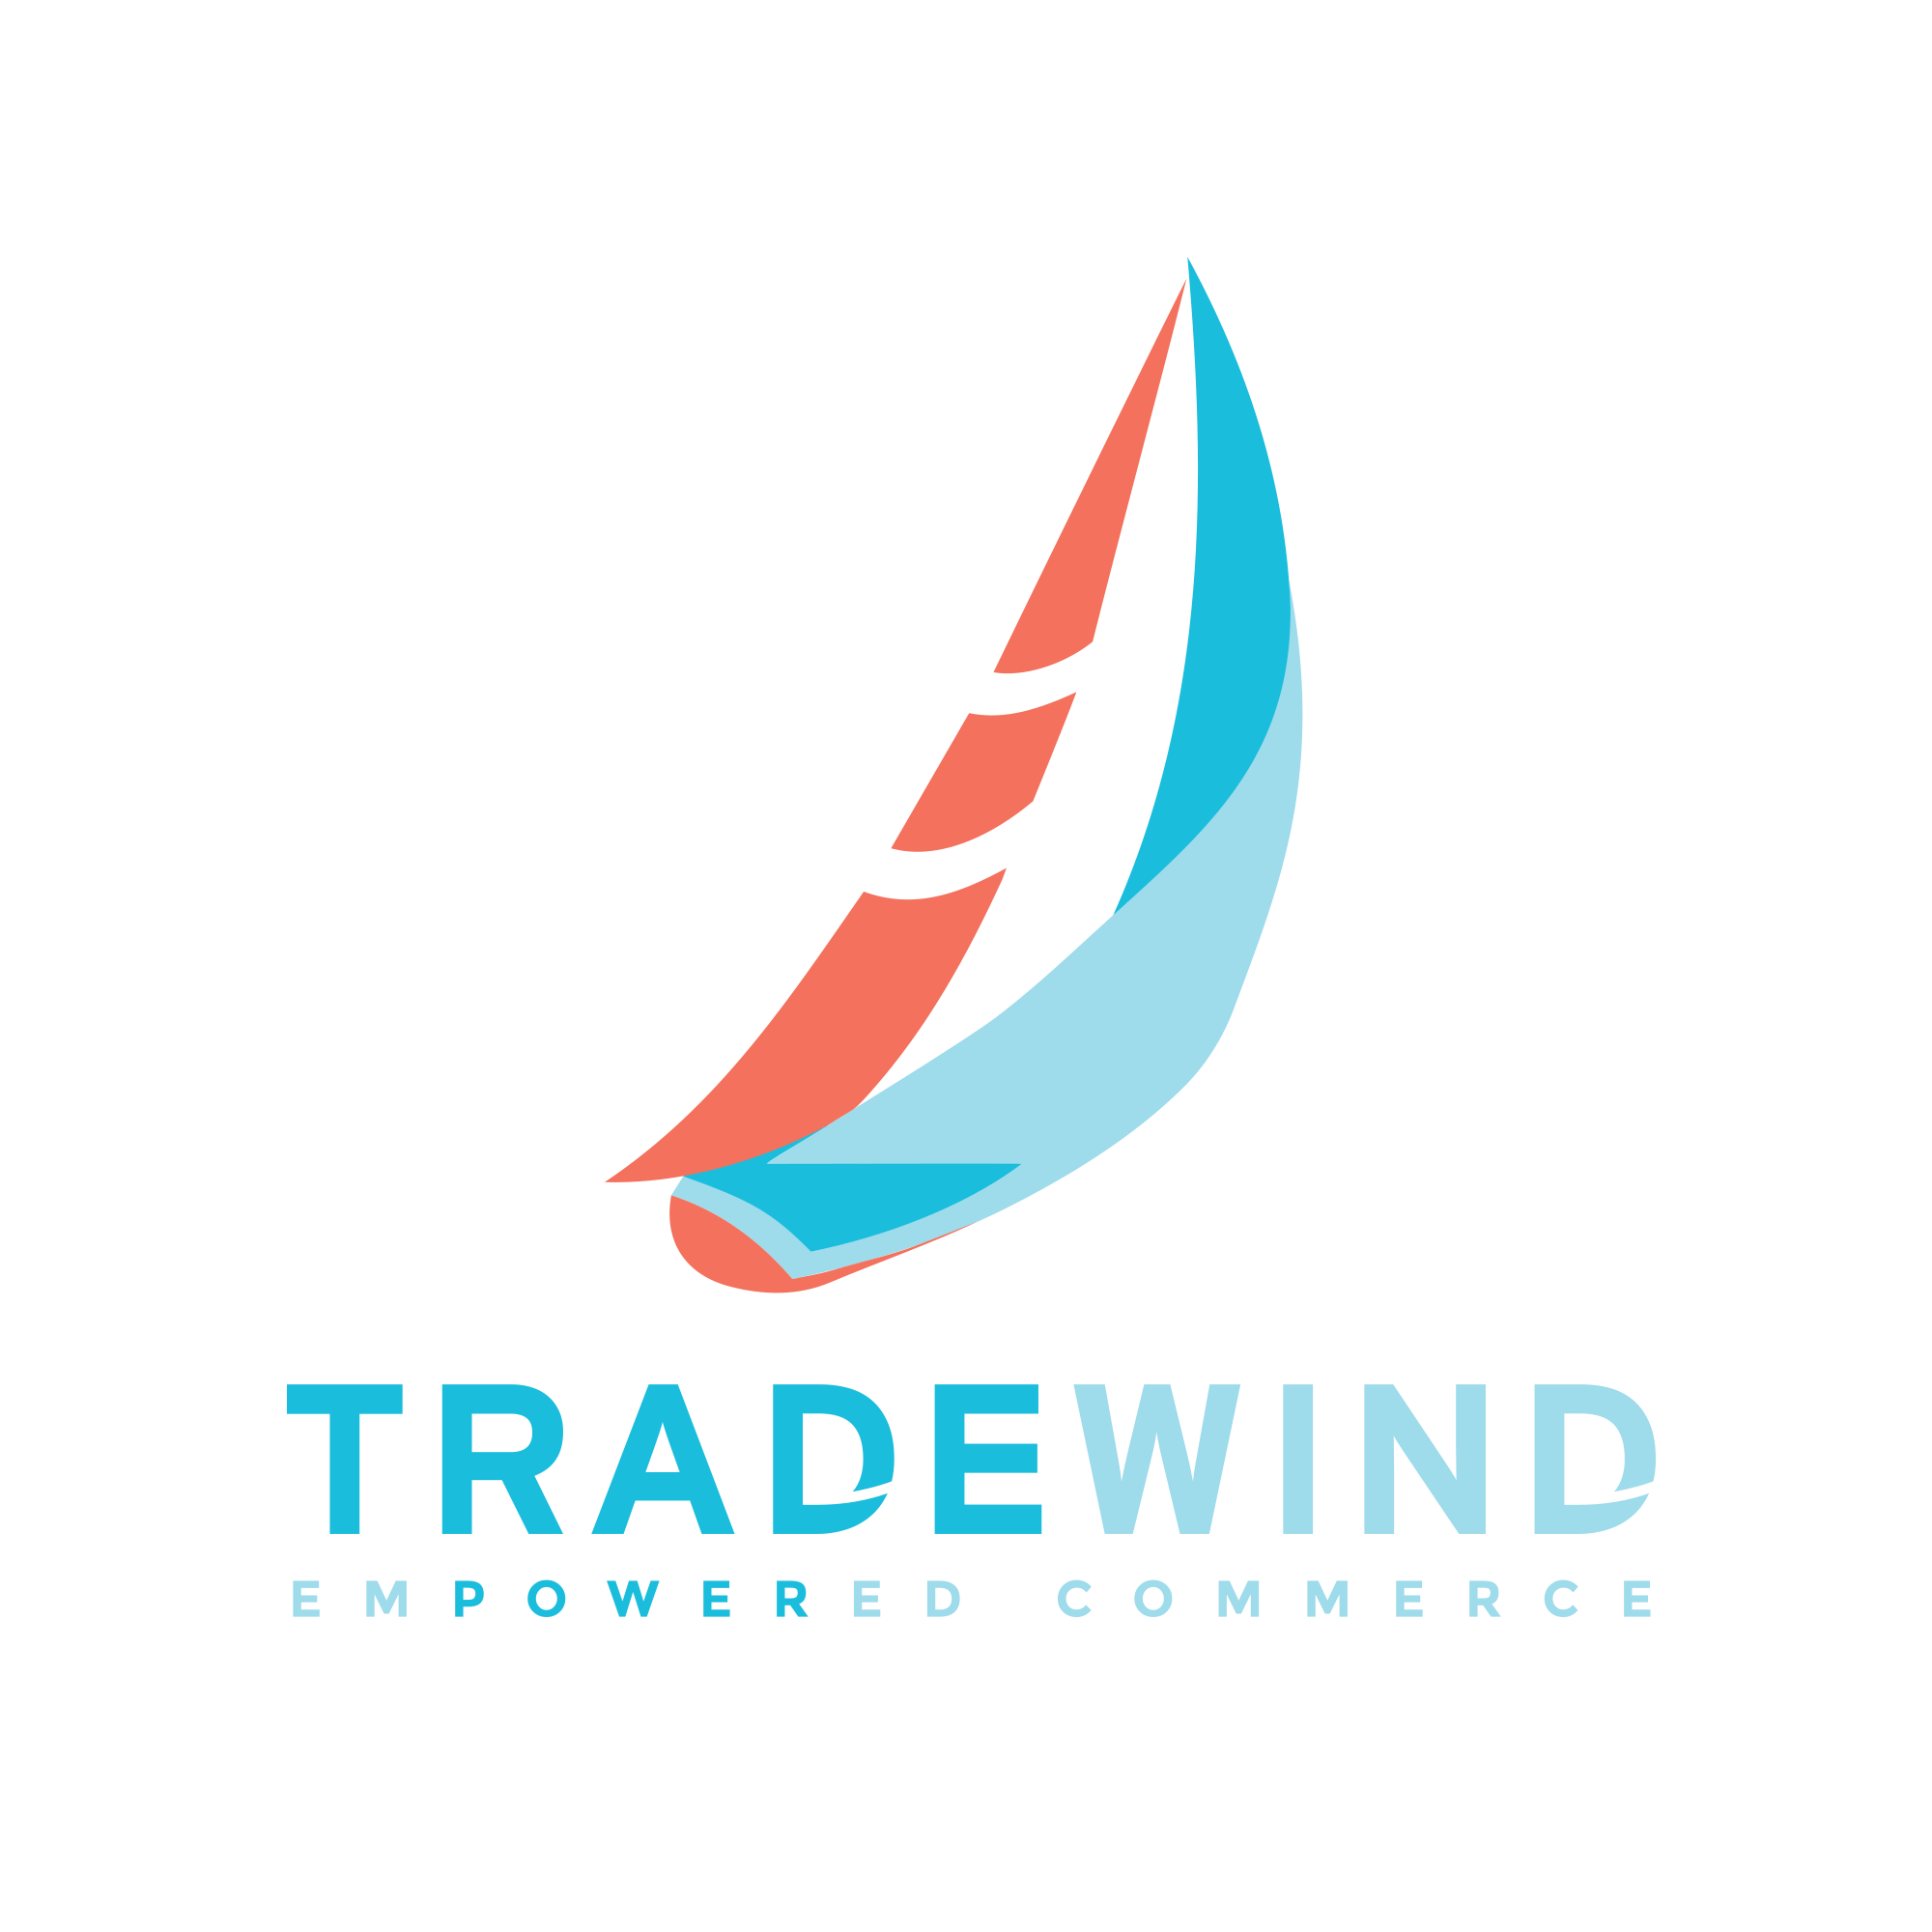 Design Company Logo - Top Toronto Logo Design Company | A Nerd's World